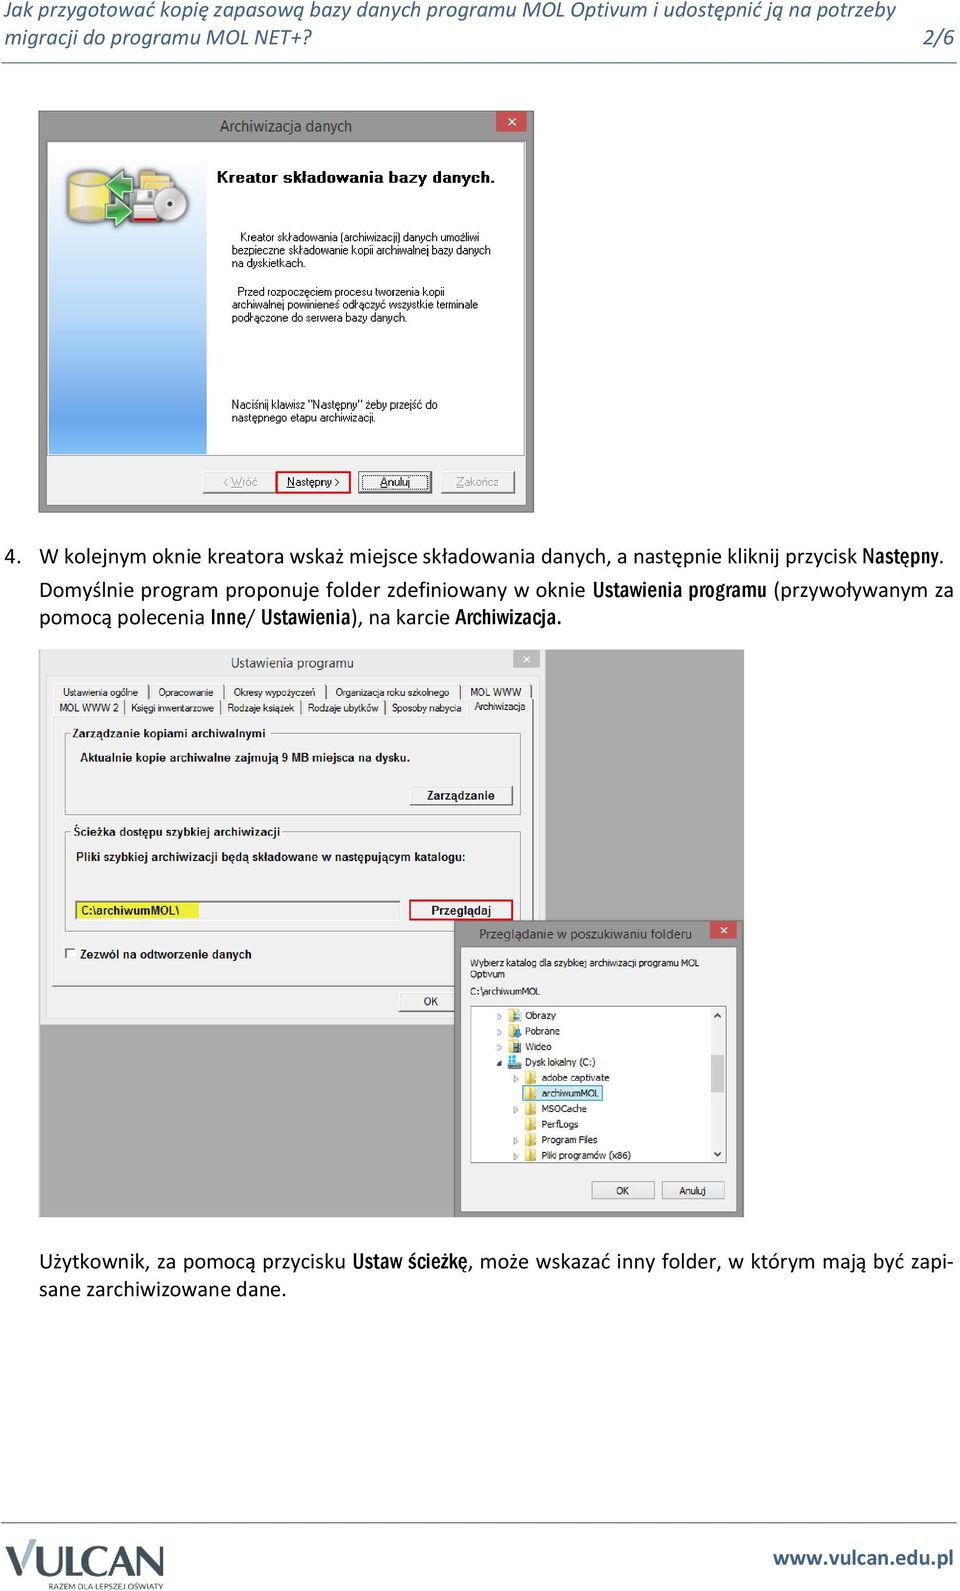 Domyślnie program proponuje folder zdefiniowany w oknie Ustawienia programu (przywoływanym za pomocą